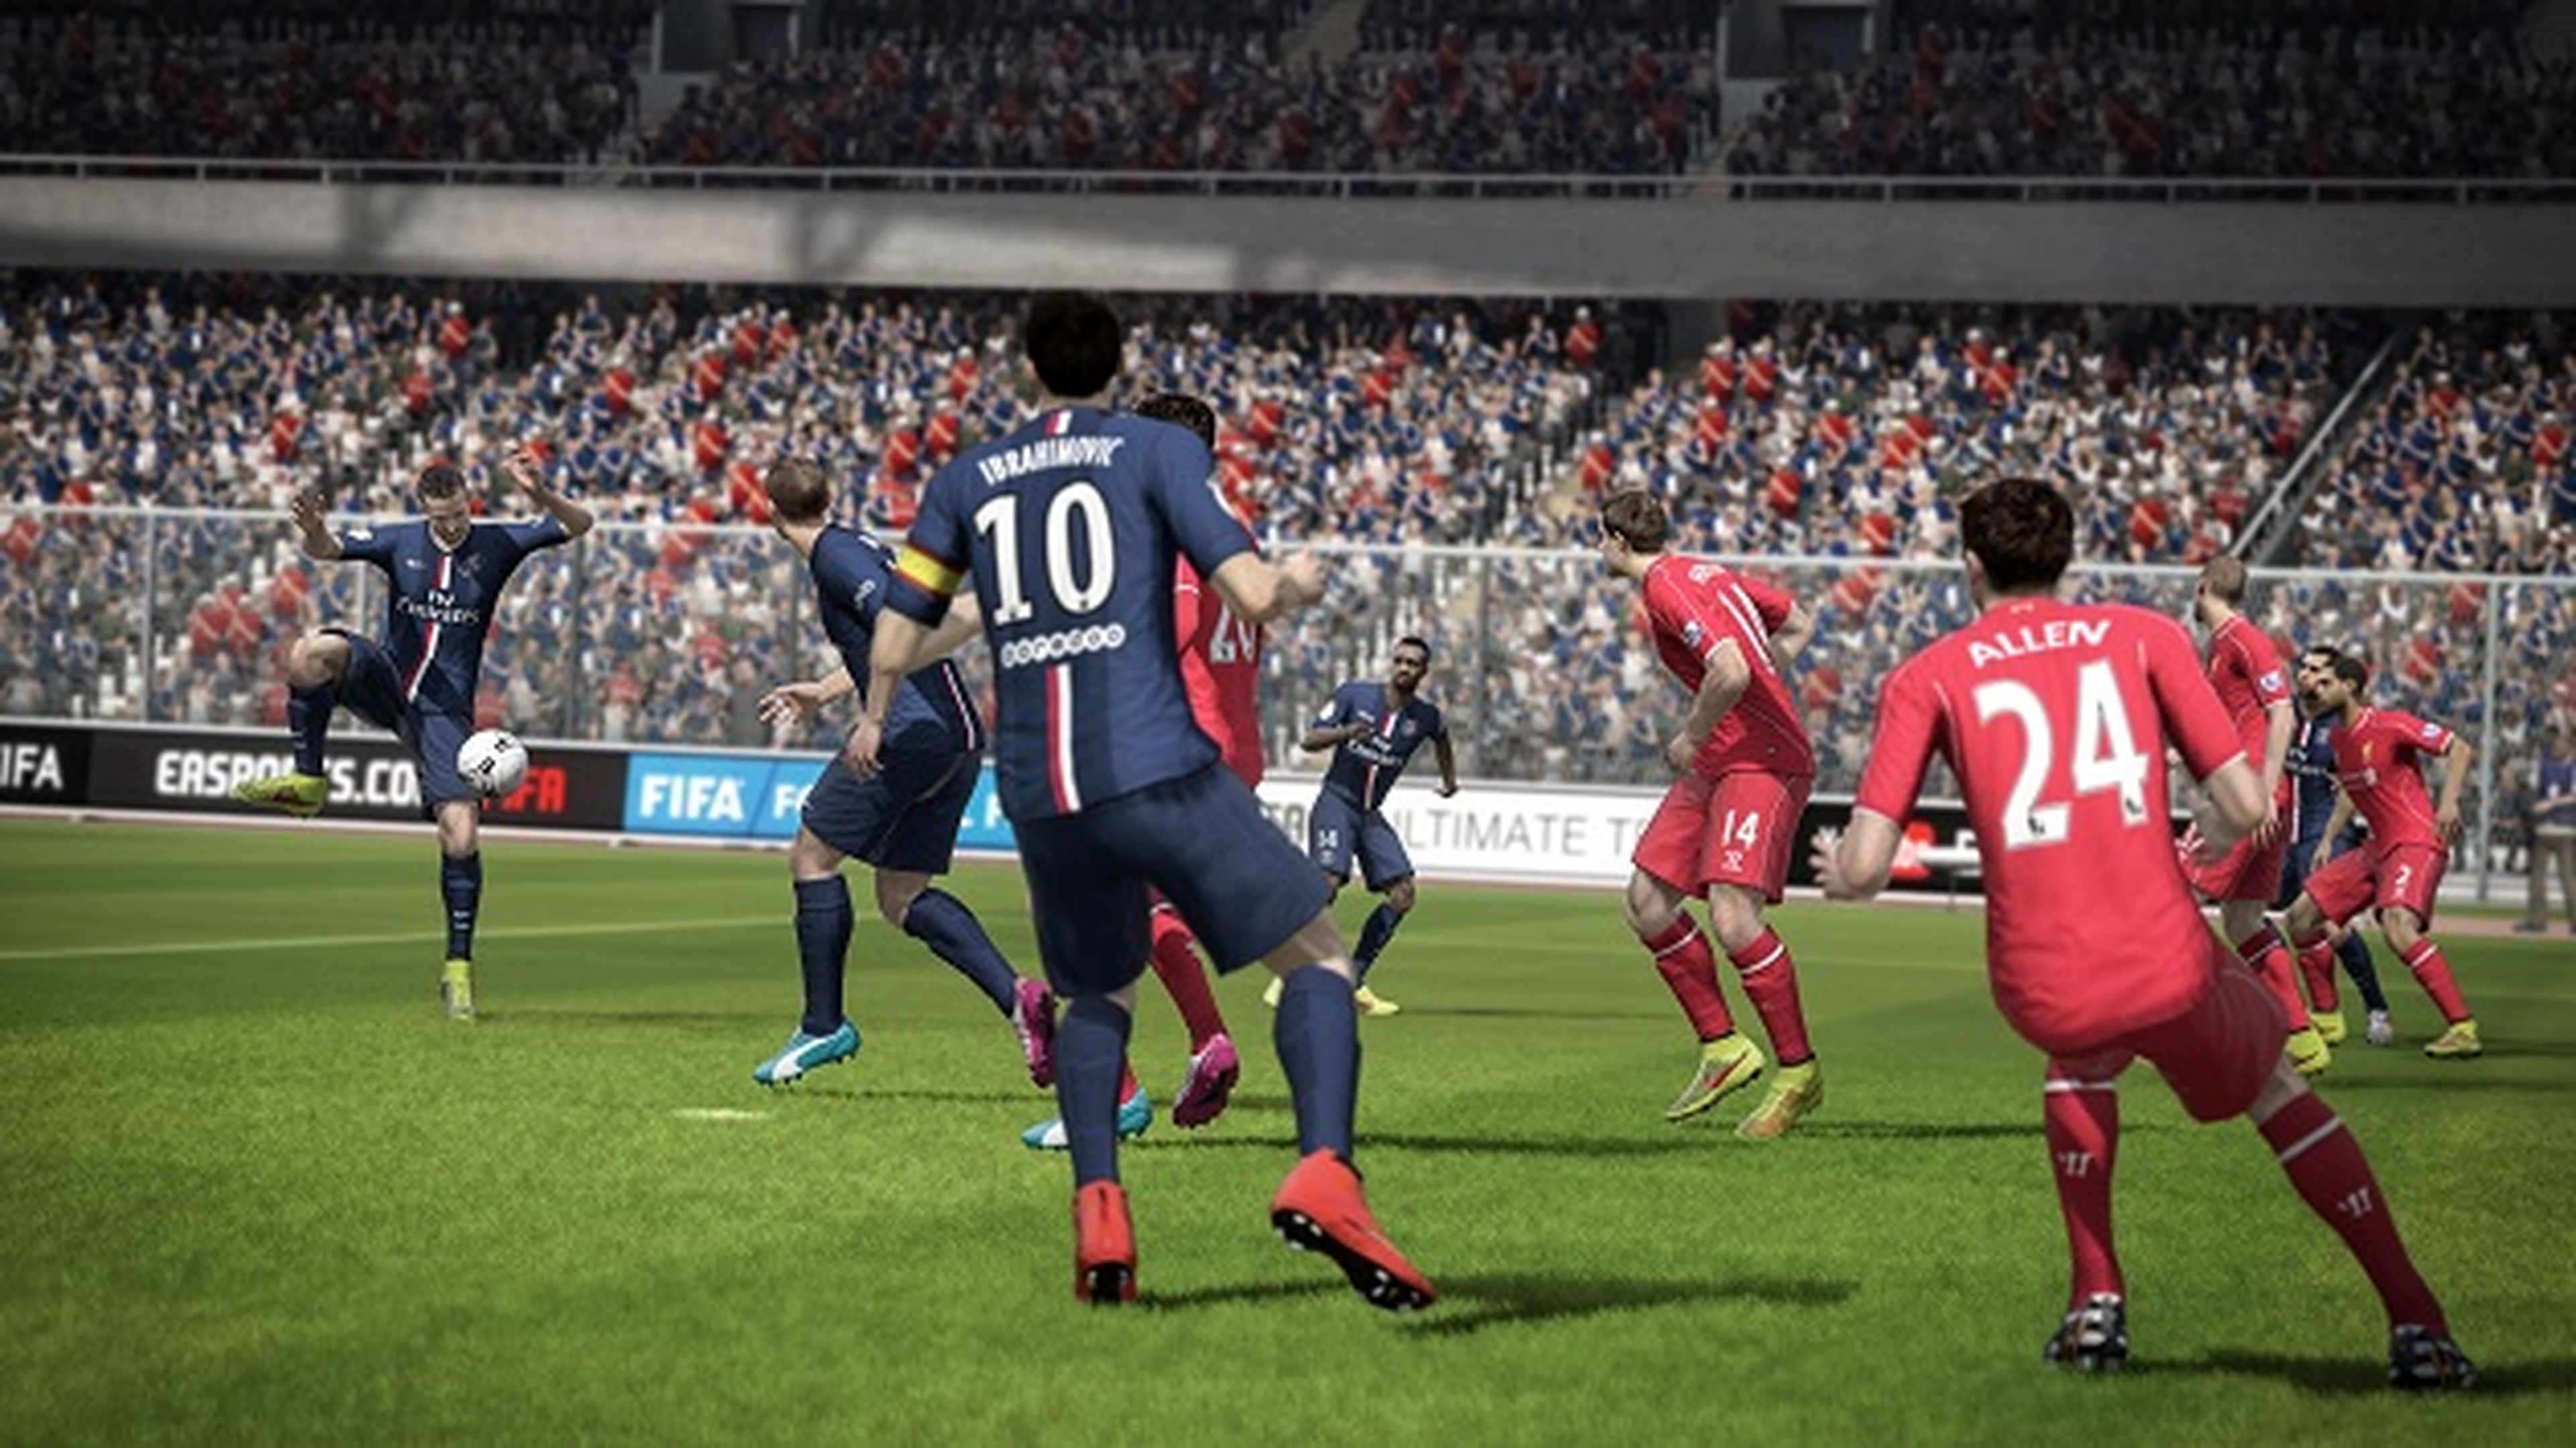 FIFA 15 - Best Goals of the Week - Round 20